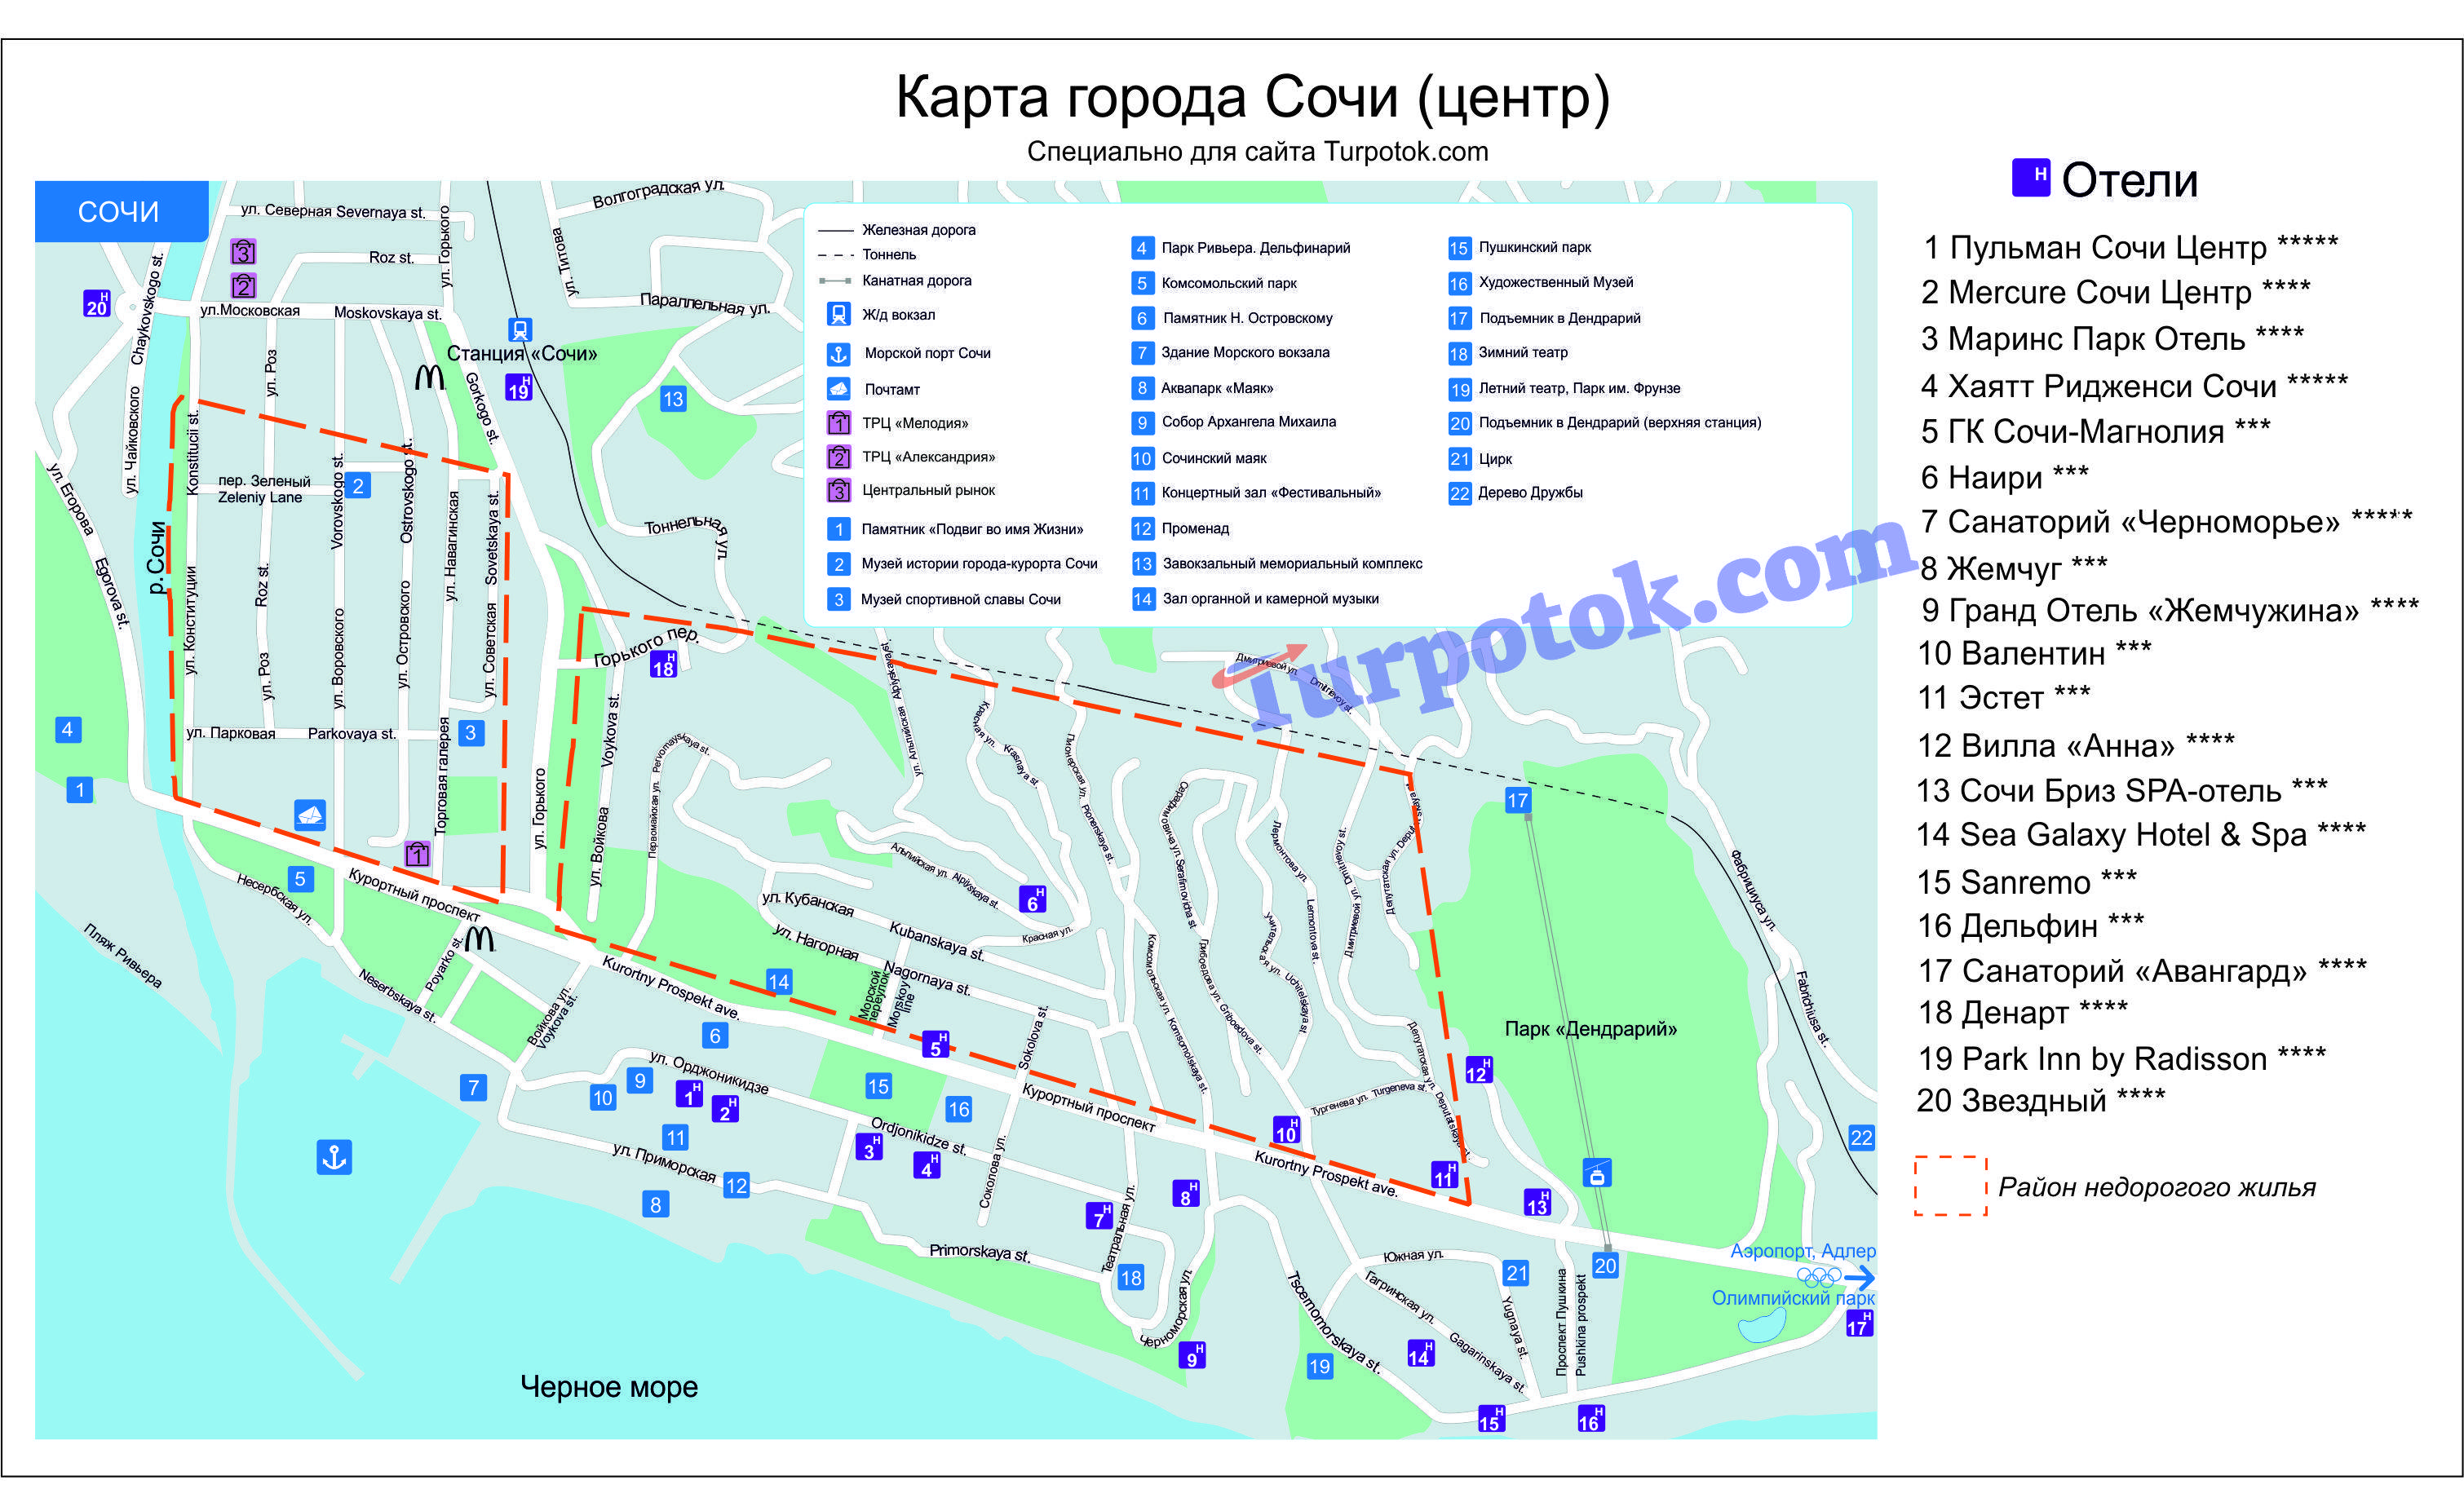 Подробная карта сочи на русском языке, карта сочи с достопримечательностями и отелями